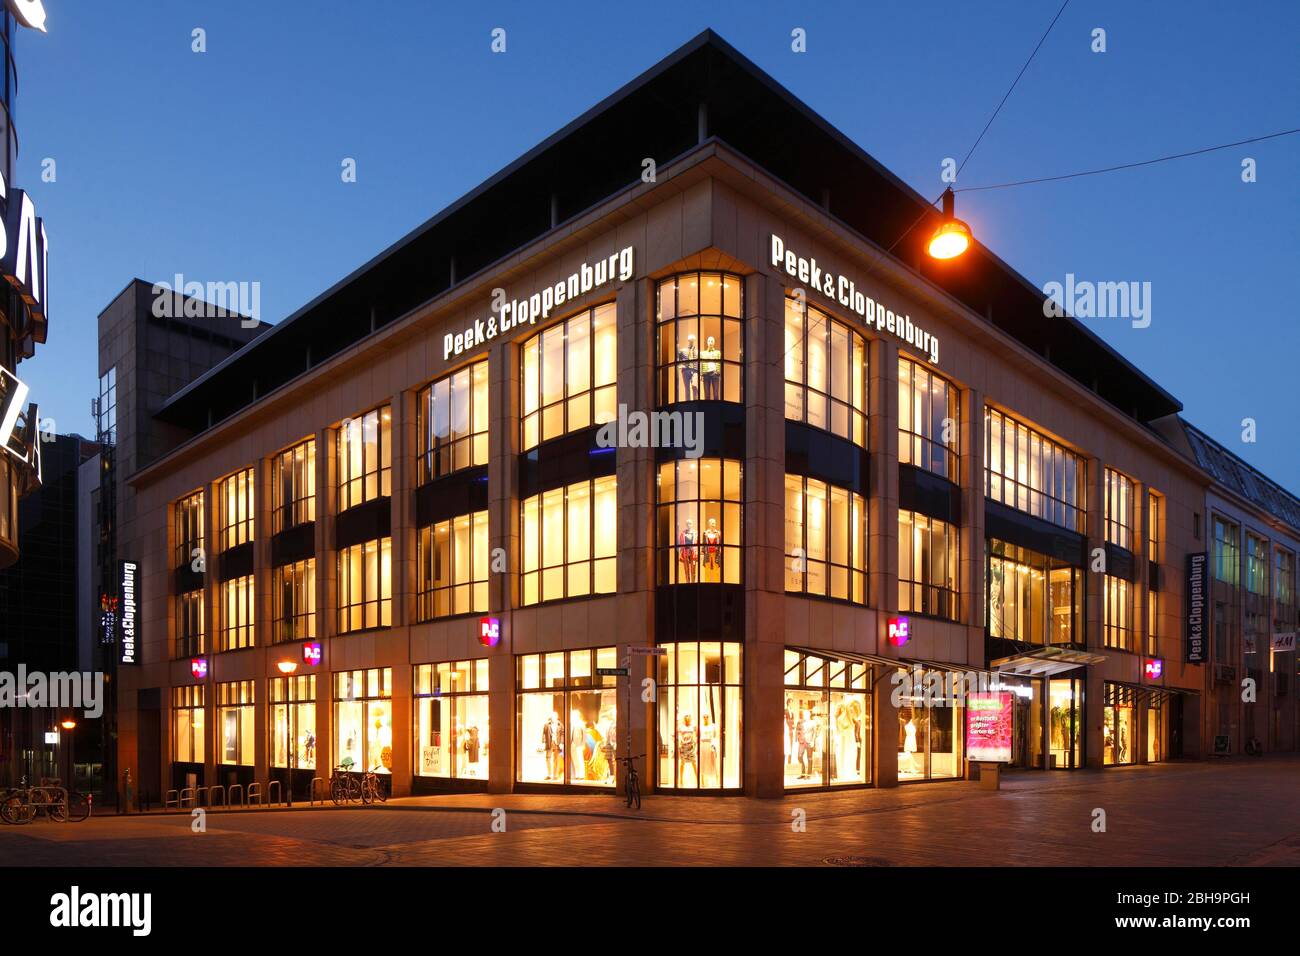 Textilkaufhaus Peek und Cloppenburg, Modernes Geschäftsgebäude, Fußgängerzone Kröpeliner Straße, Rostock, Mecklenburg-Vorpommern, Deutschland, Europa Stock Photo